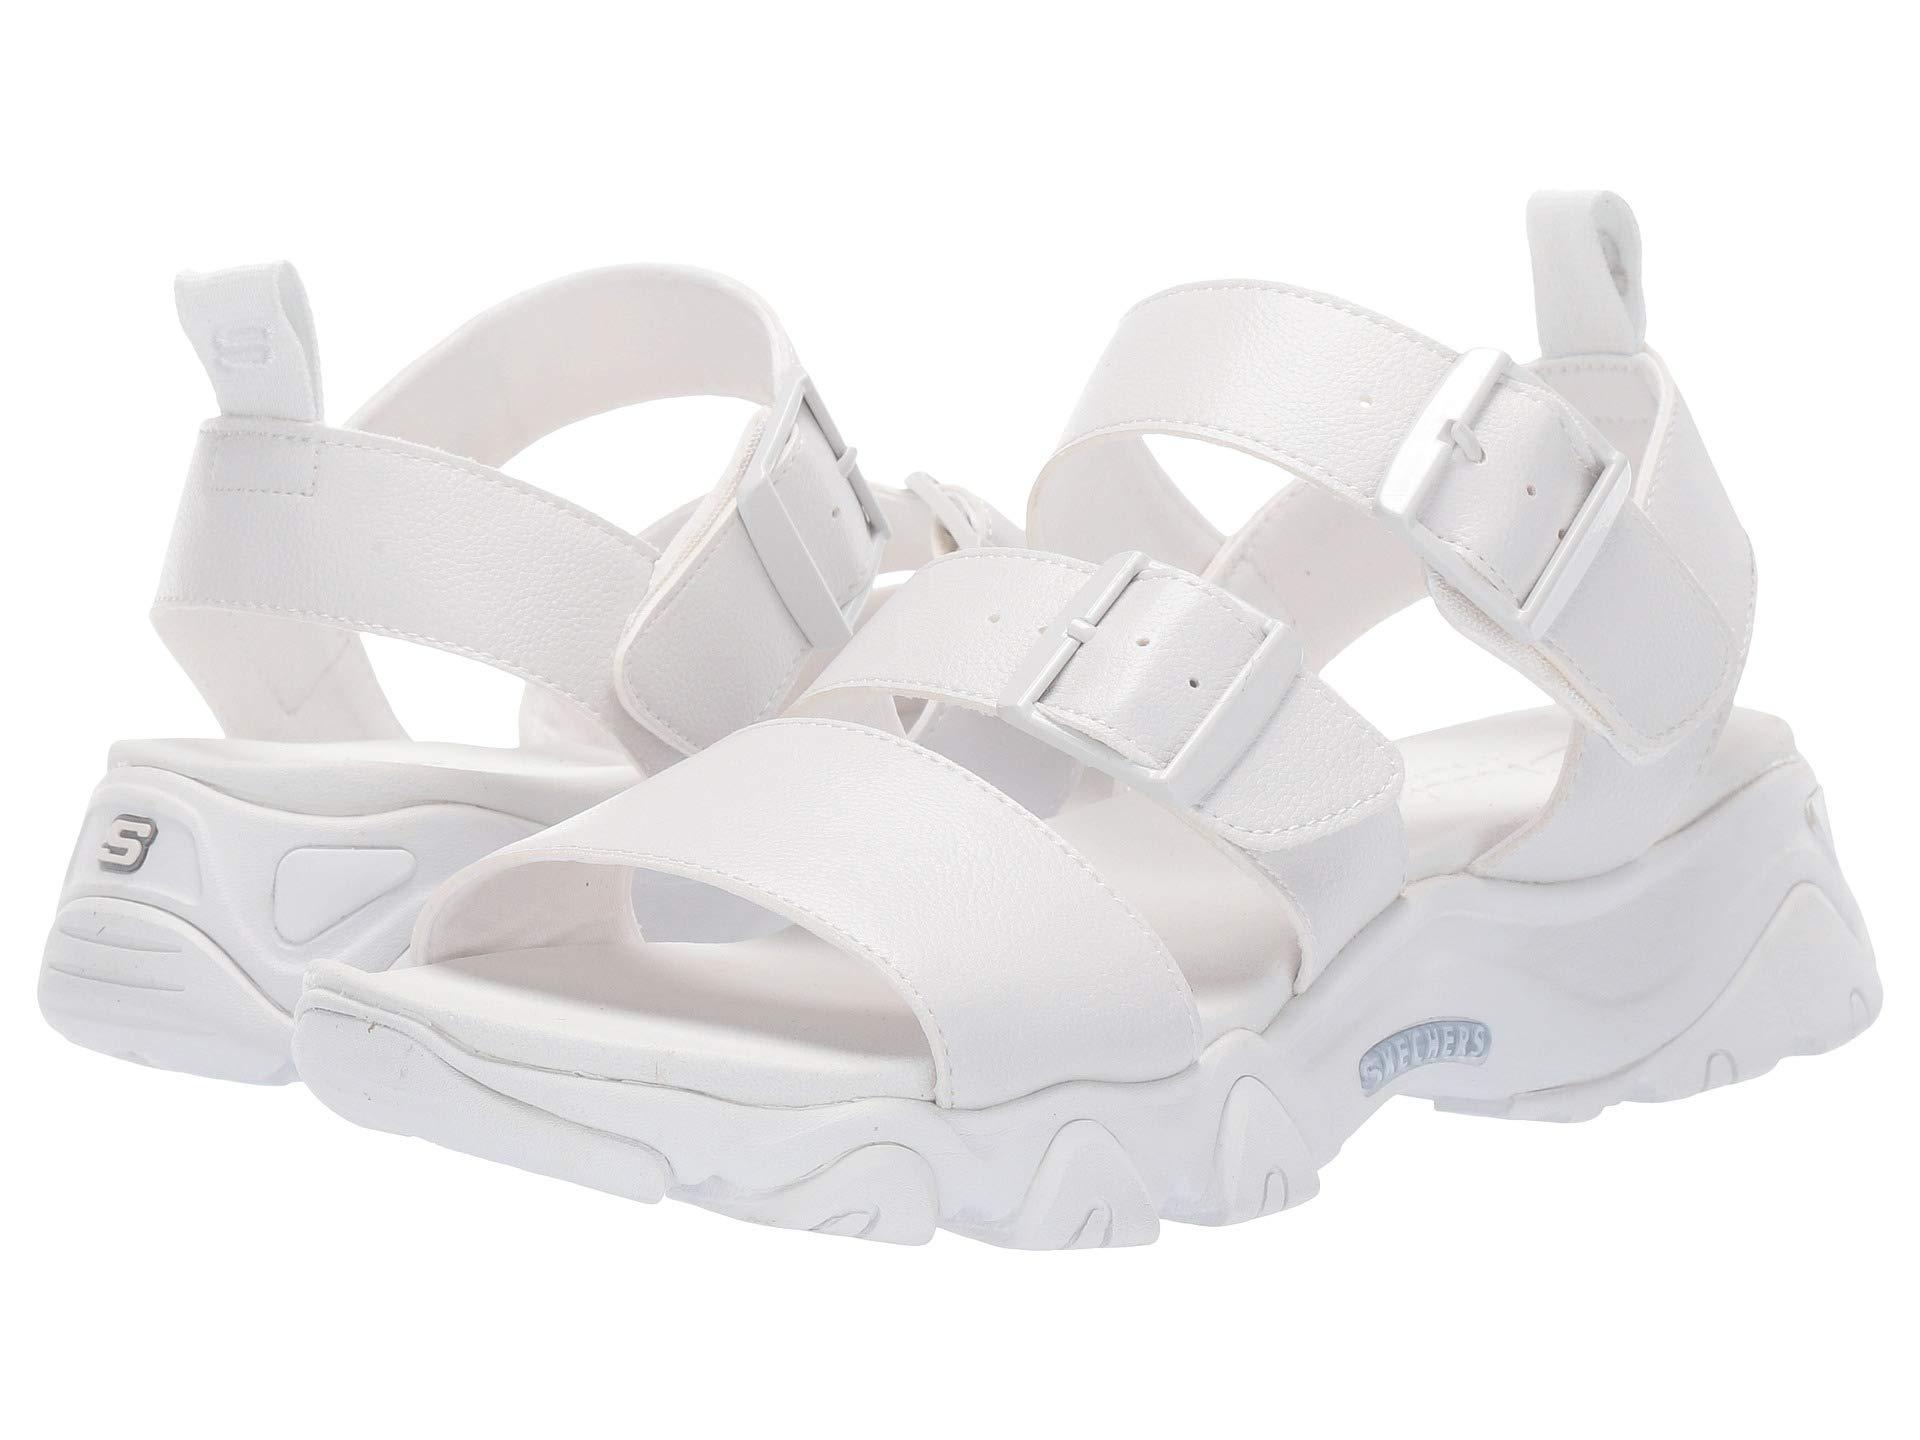 white sandals skechers - alterazioni 